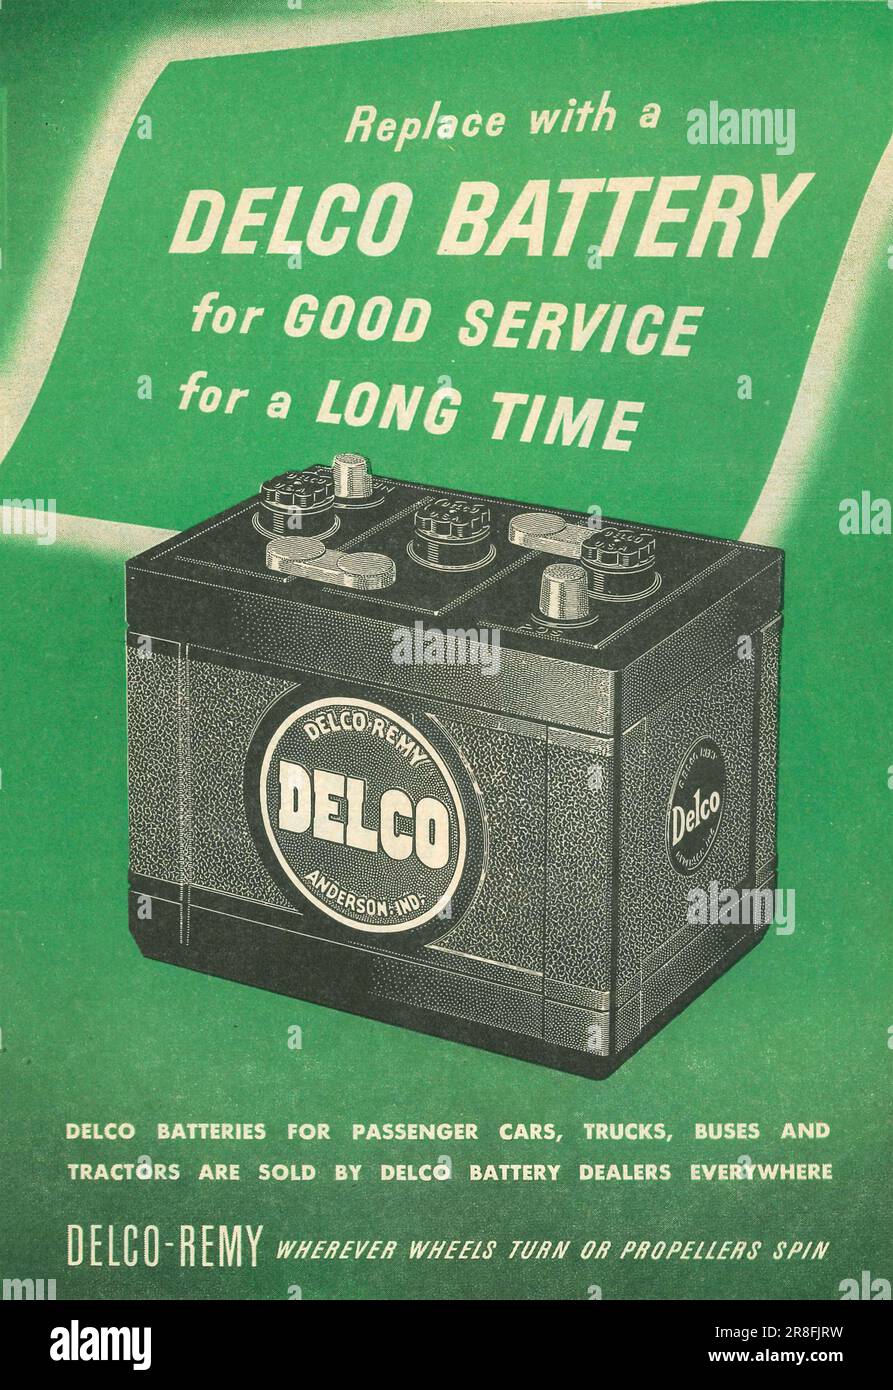 Delco Batterie für Autos, Lkw und Busse, Delco-Remy Werbespot in einem Magazin 1949 Stockfoto